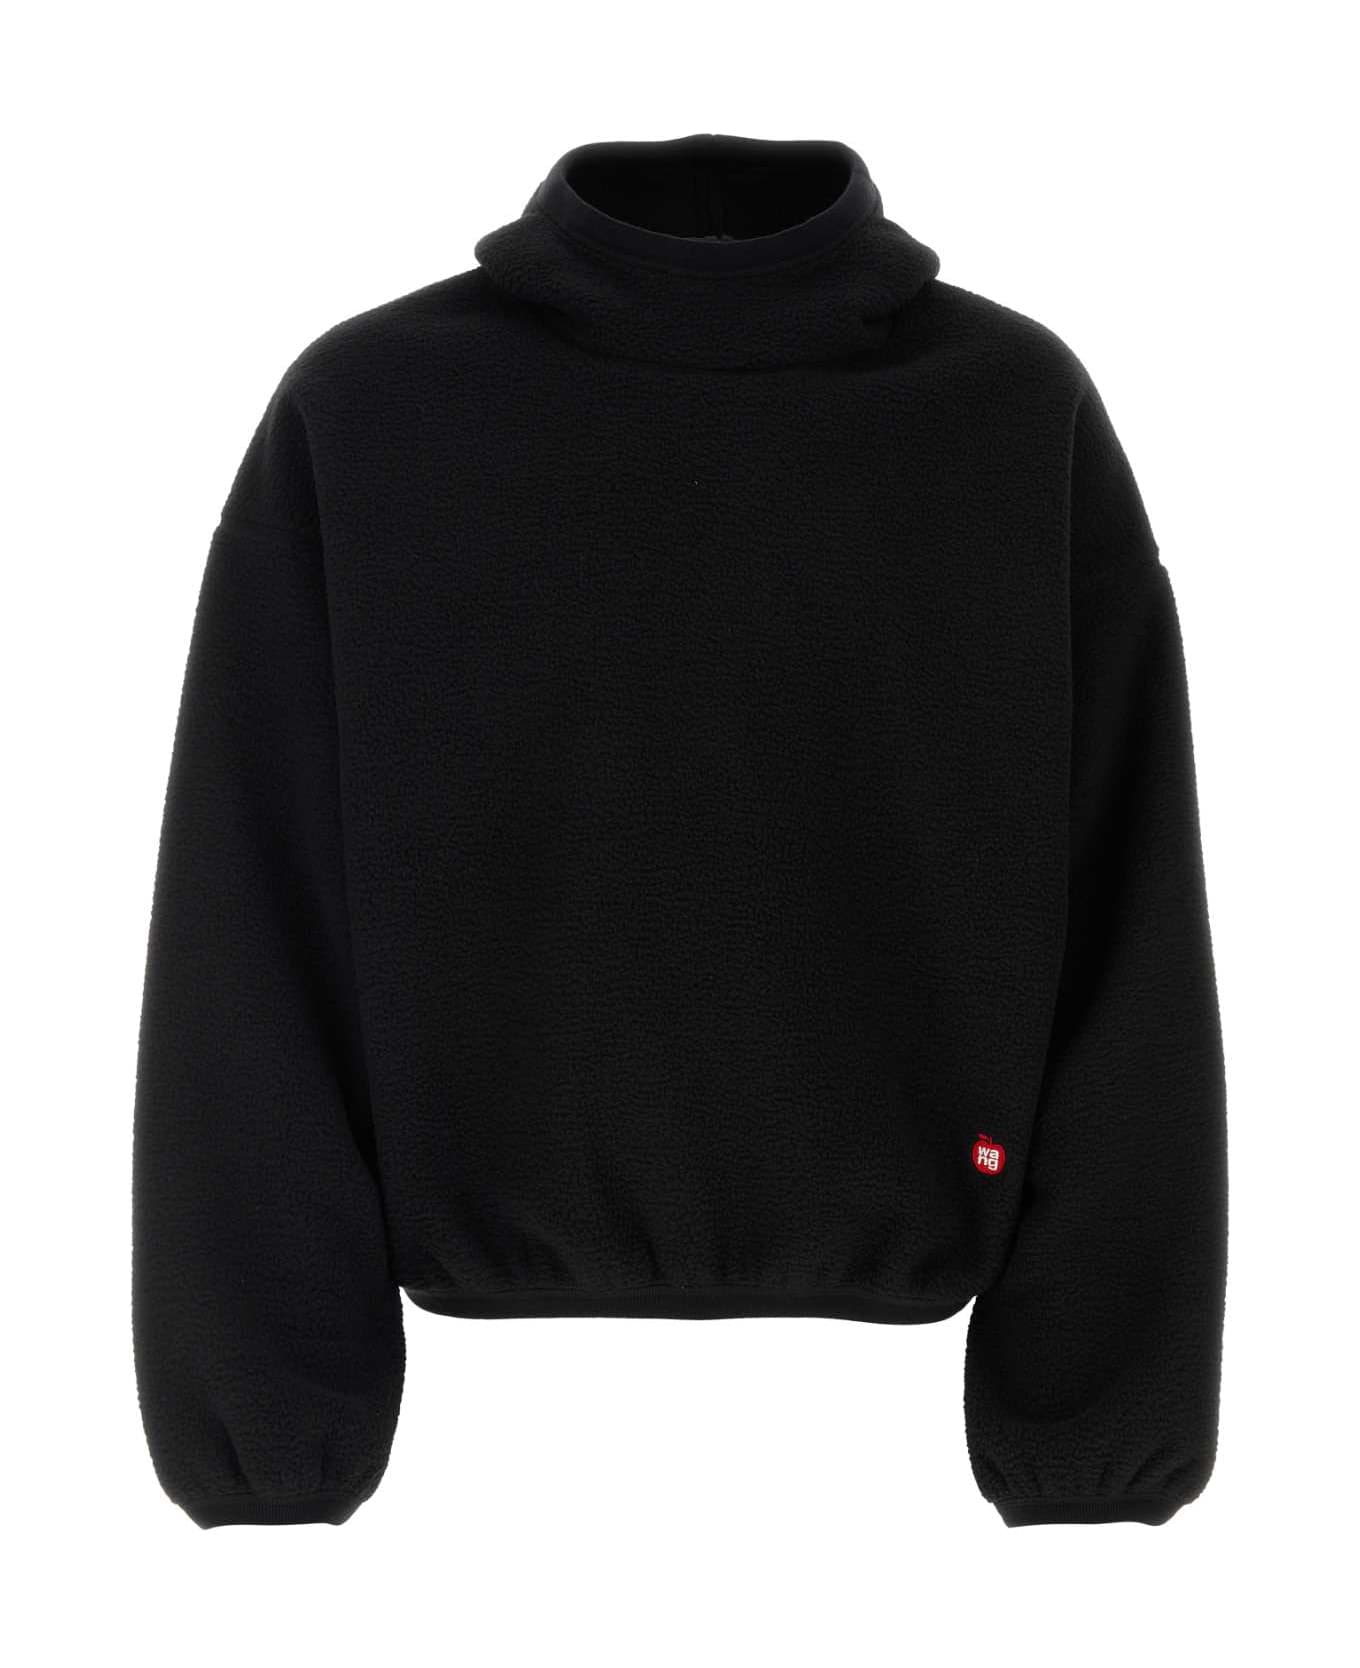 Alexander Wang Black Pile Sweatshirt - Black